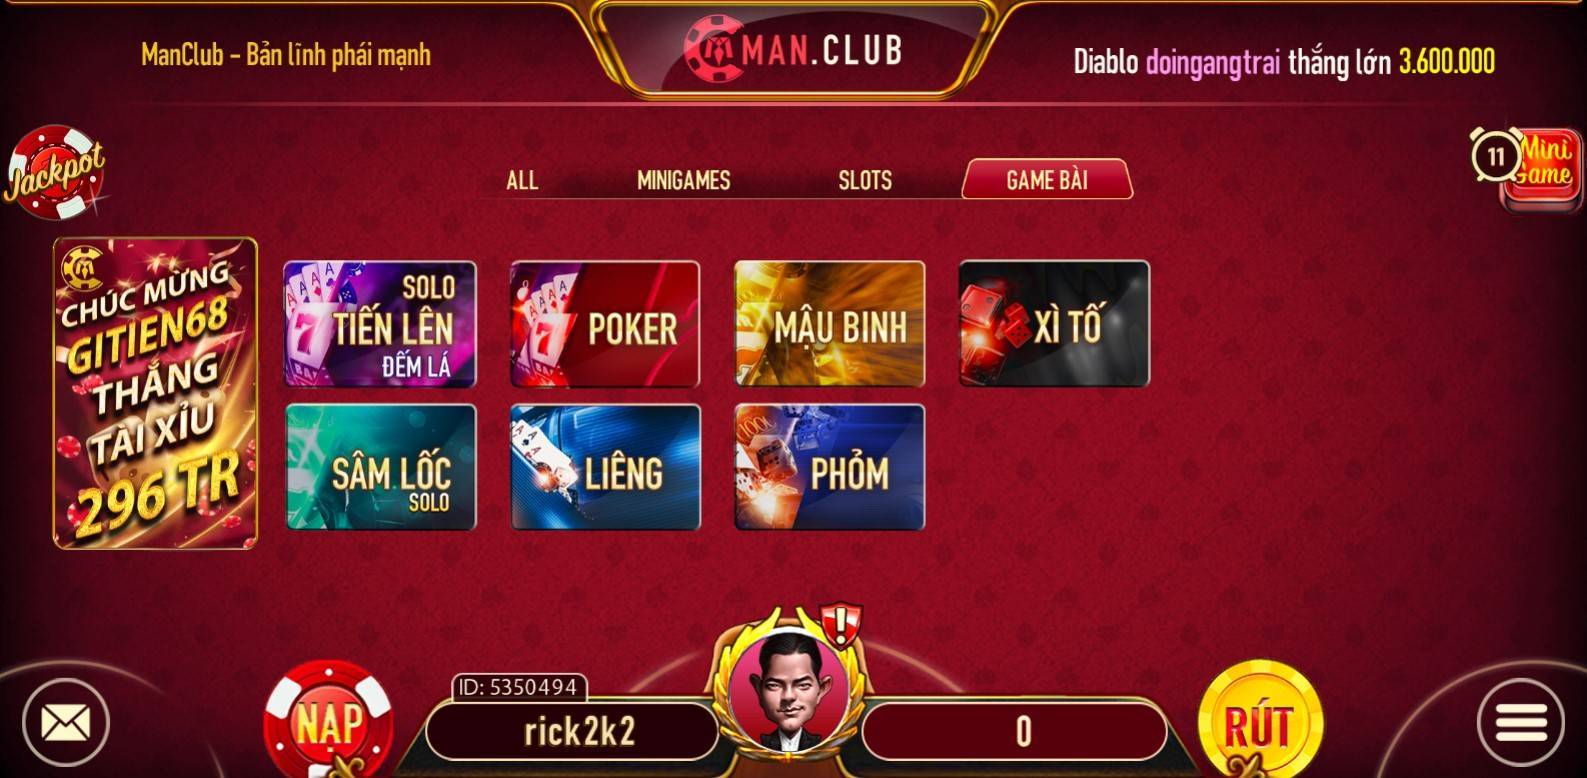 Game bài tại Man Club